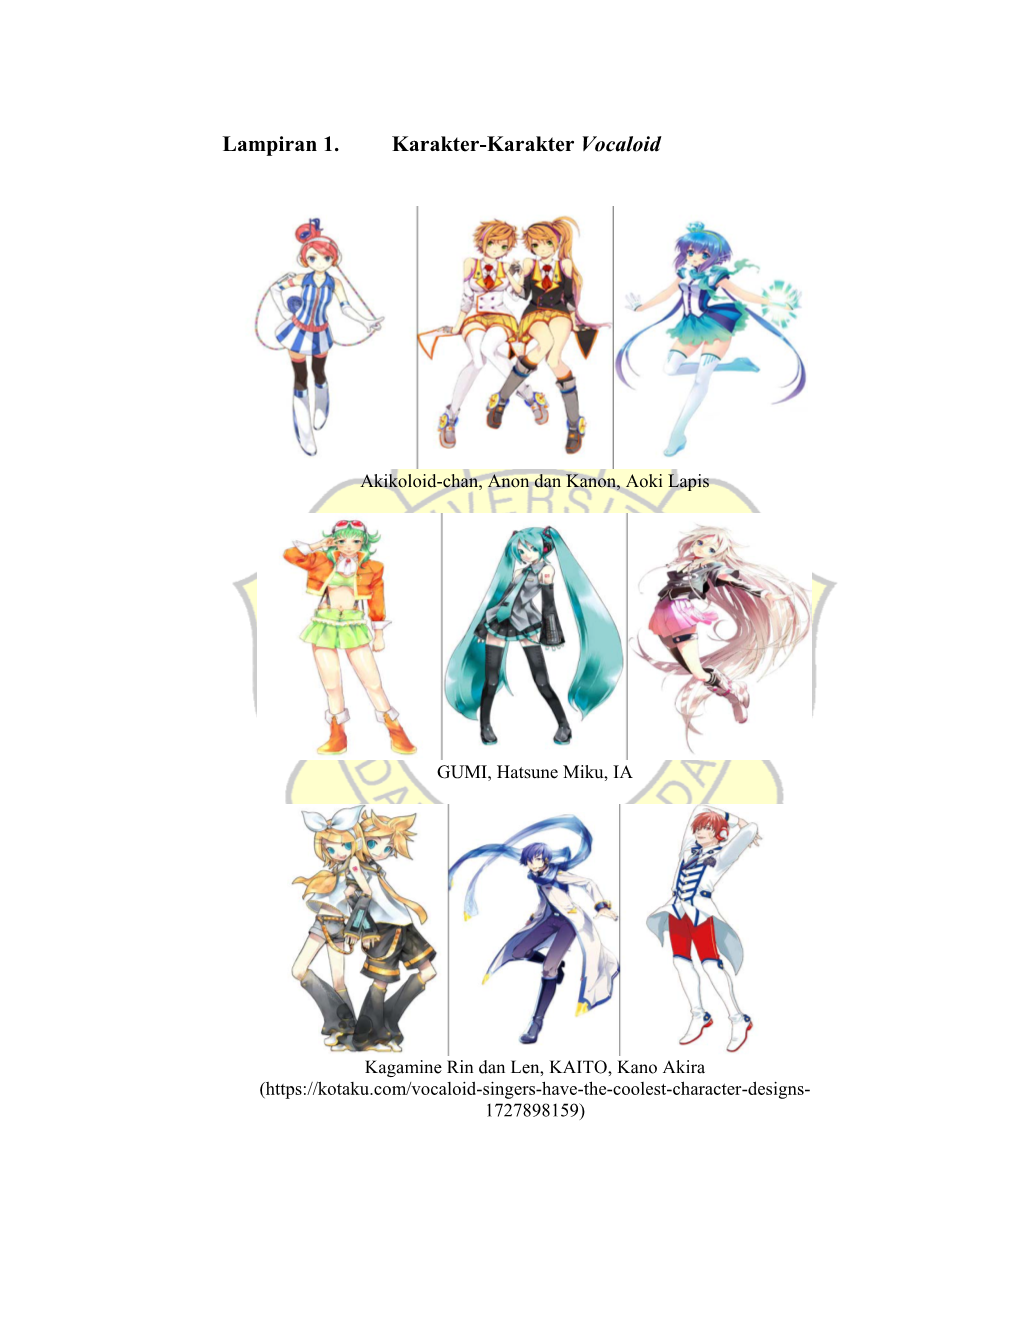 Lampiran 1. Karakter-Karakter Vocaloid